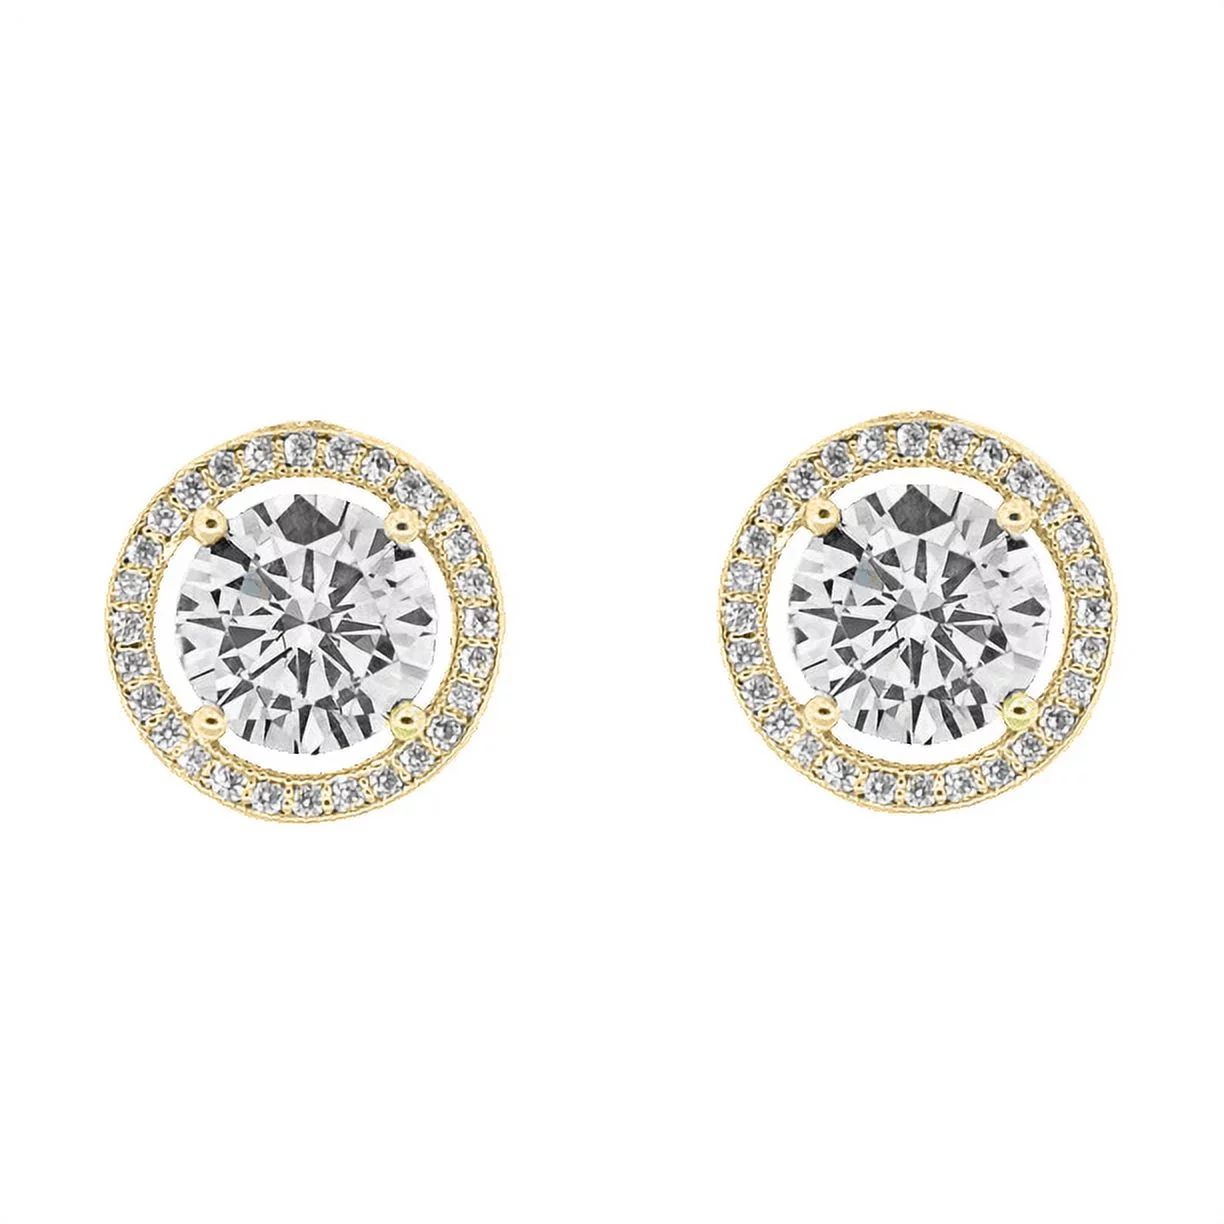 Cate & Chloe Ariel 18k Yellow Gold Plated Halo Stud Earrings | CZ Crystal Earrings for Women, Gif... | Walmart (US)